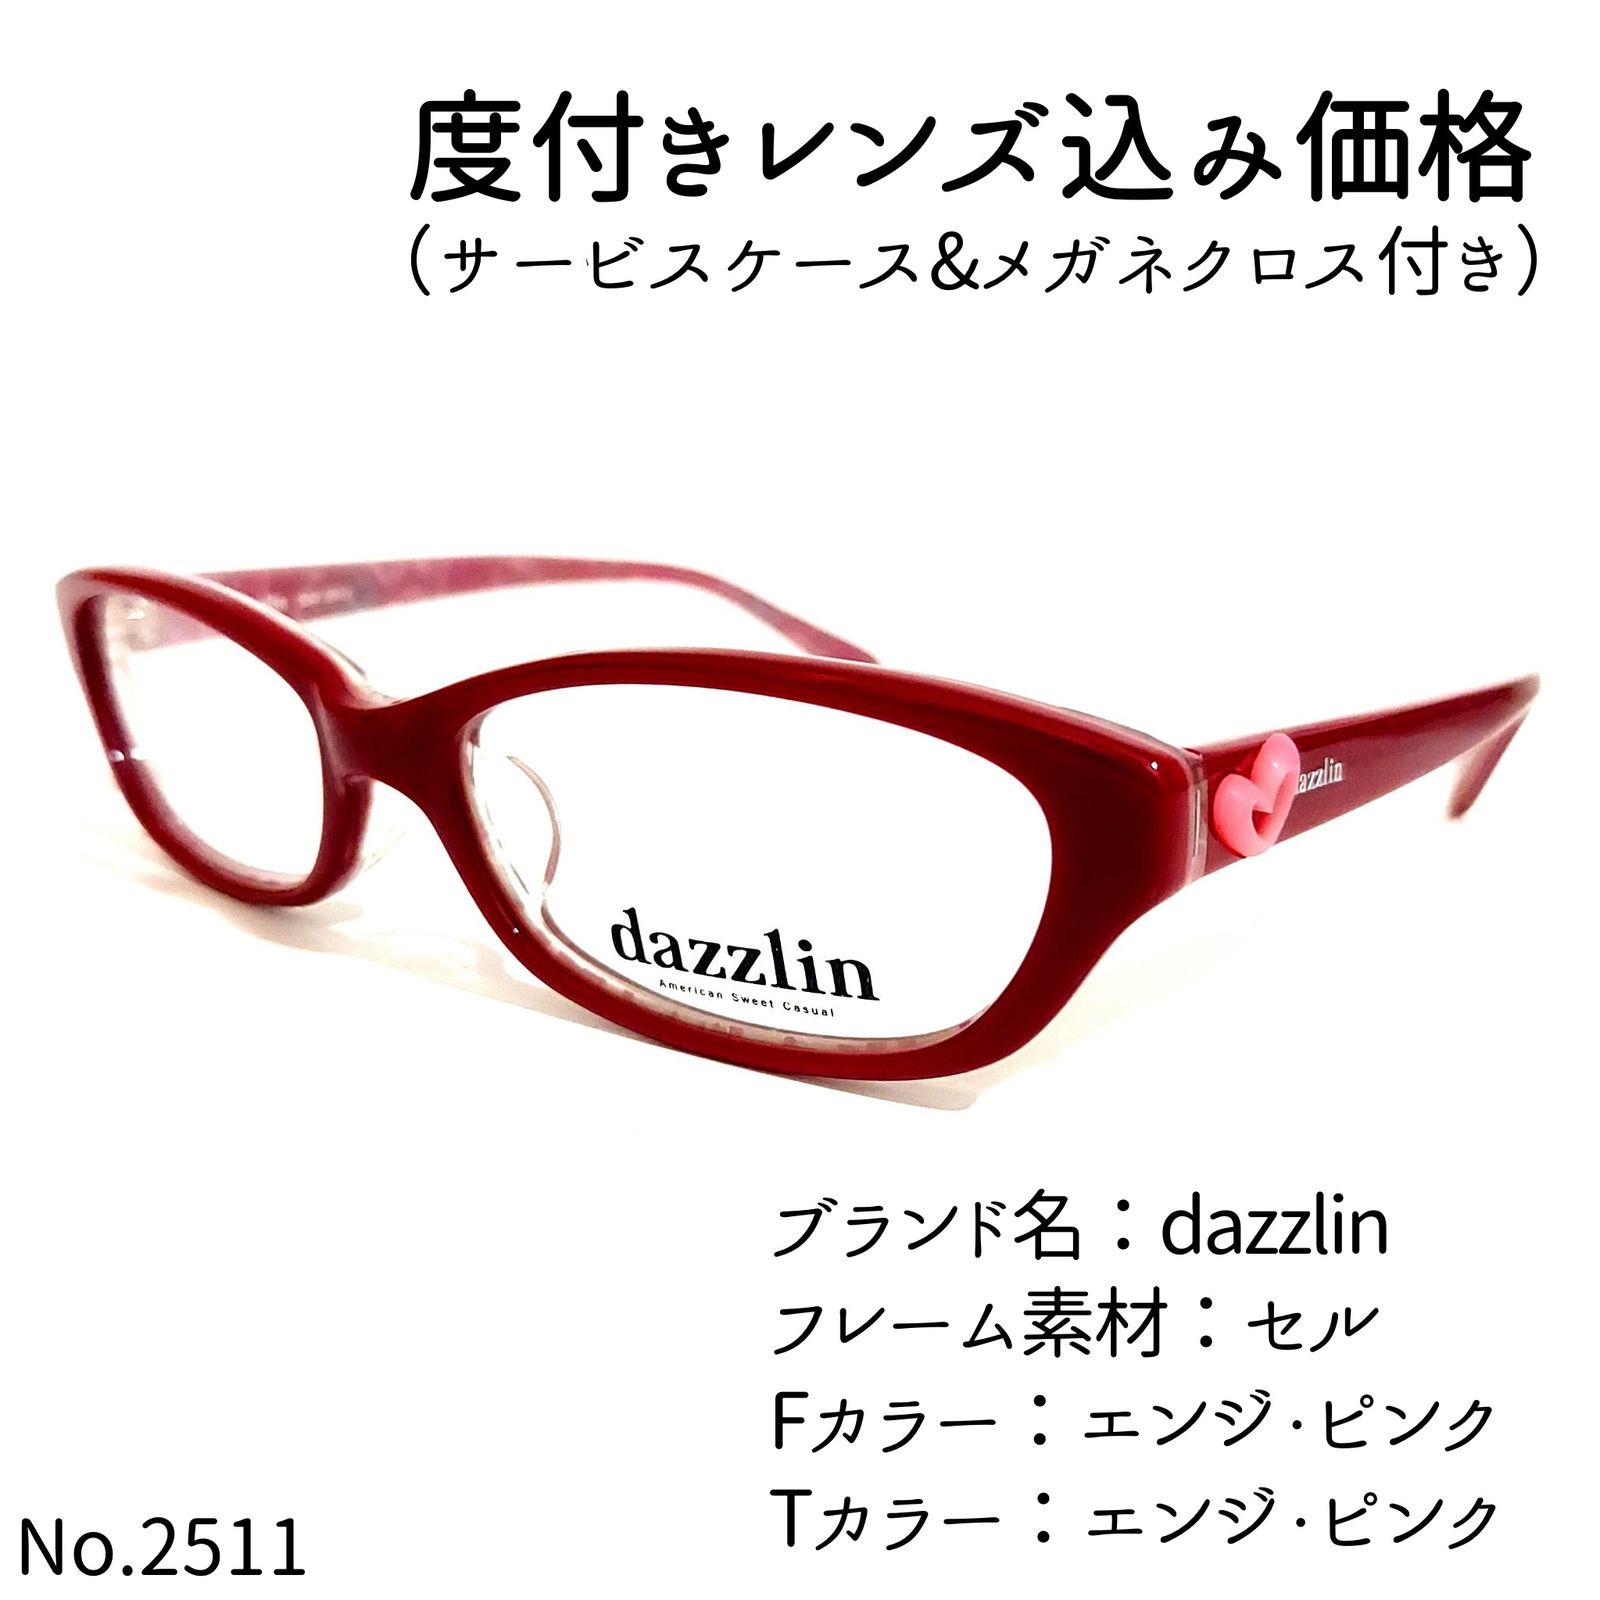 No.2511メガネ dazzlin【度数入り込み価格】-